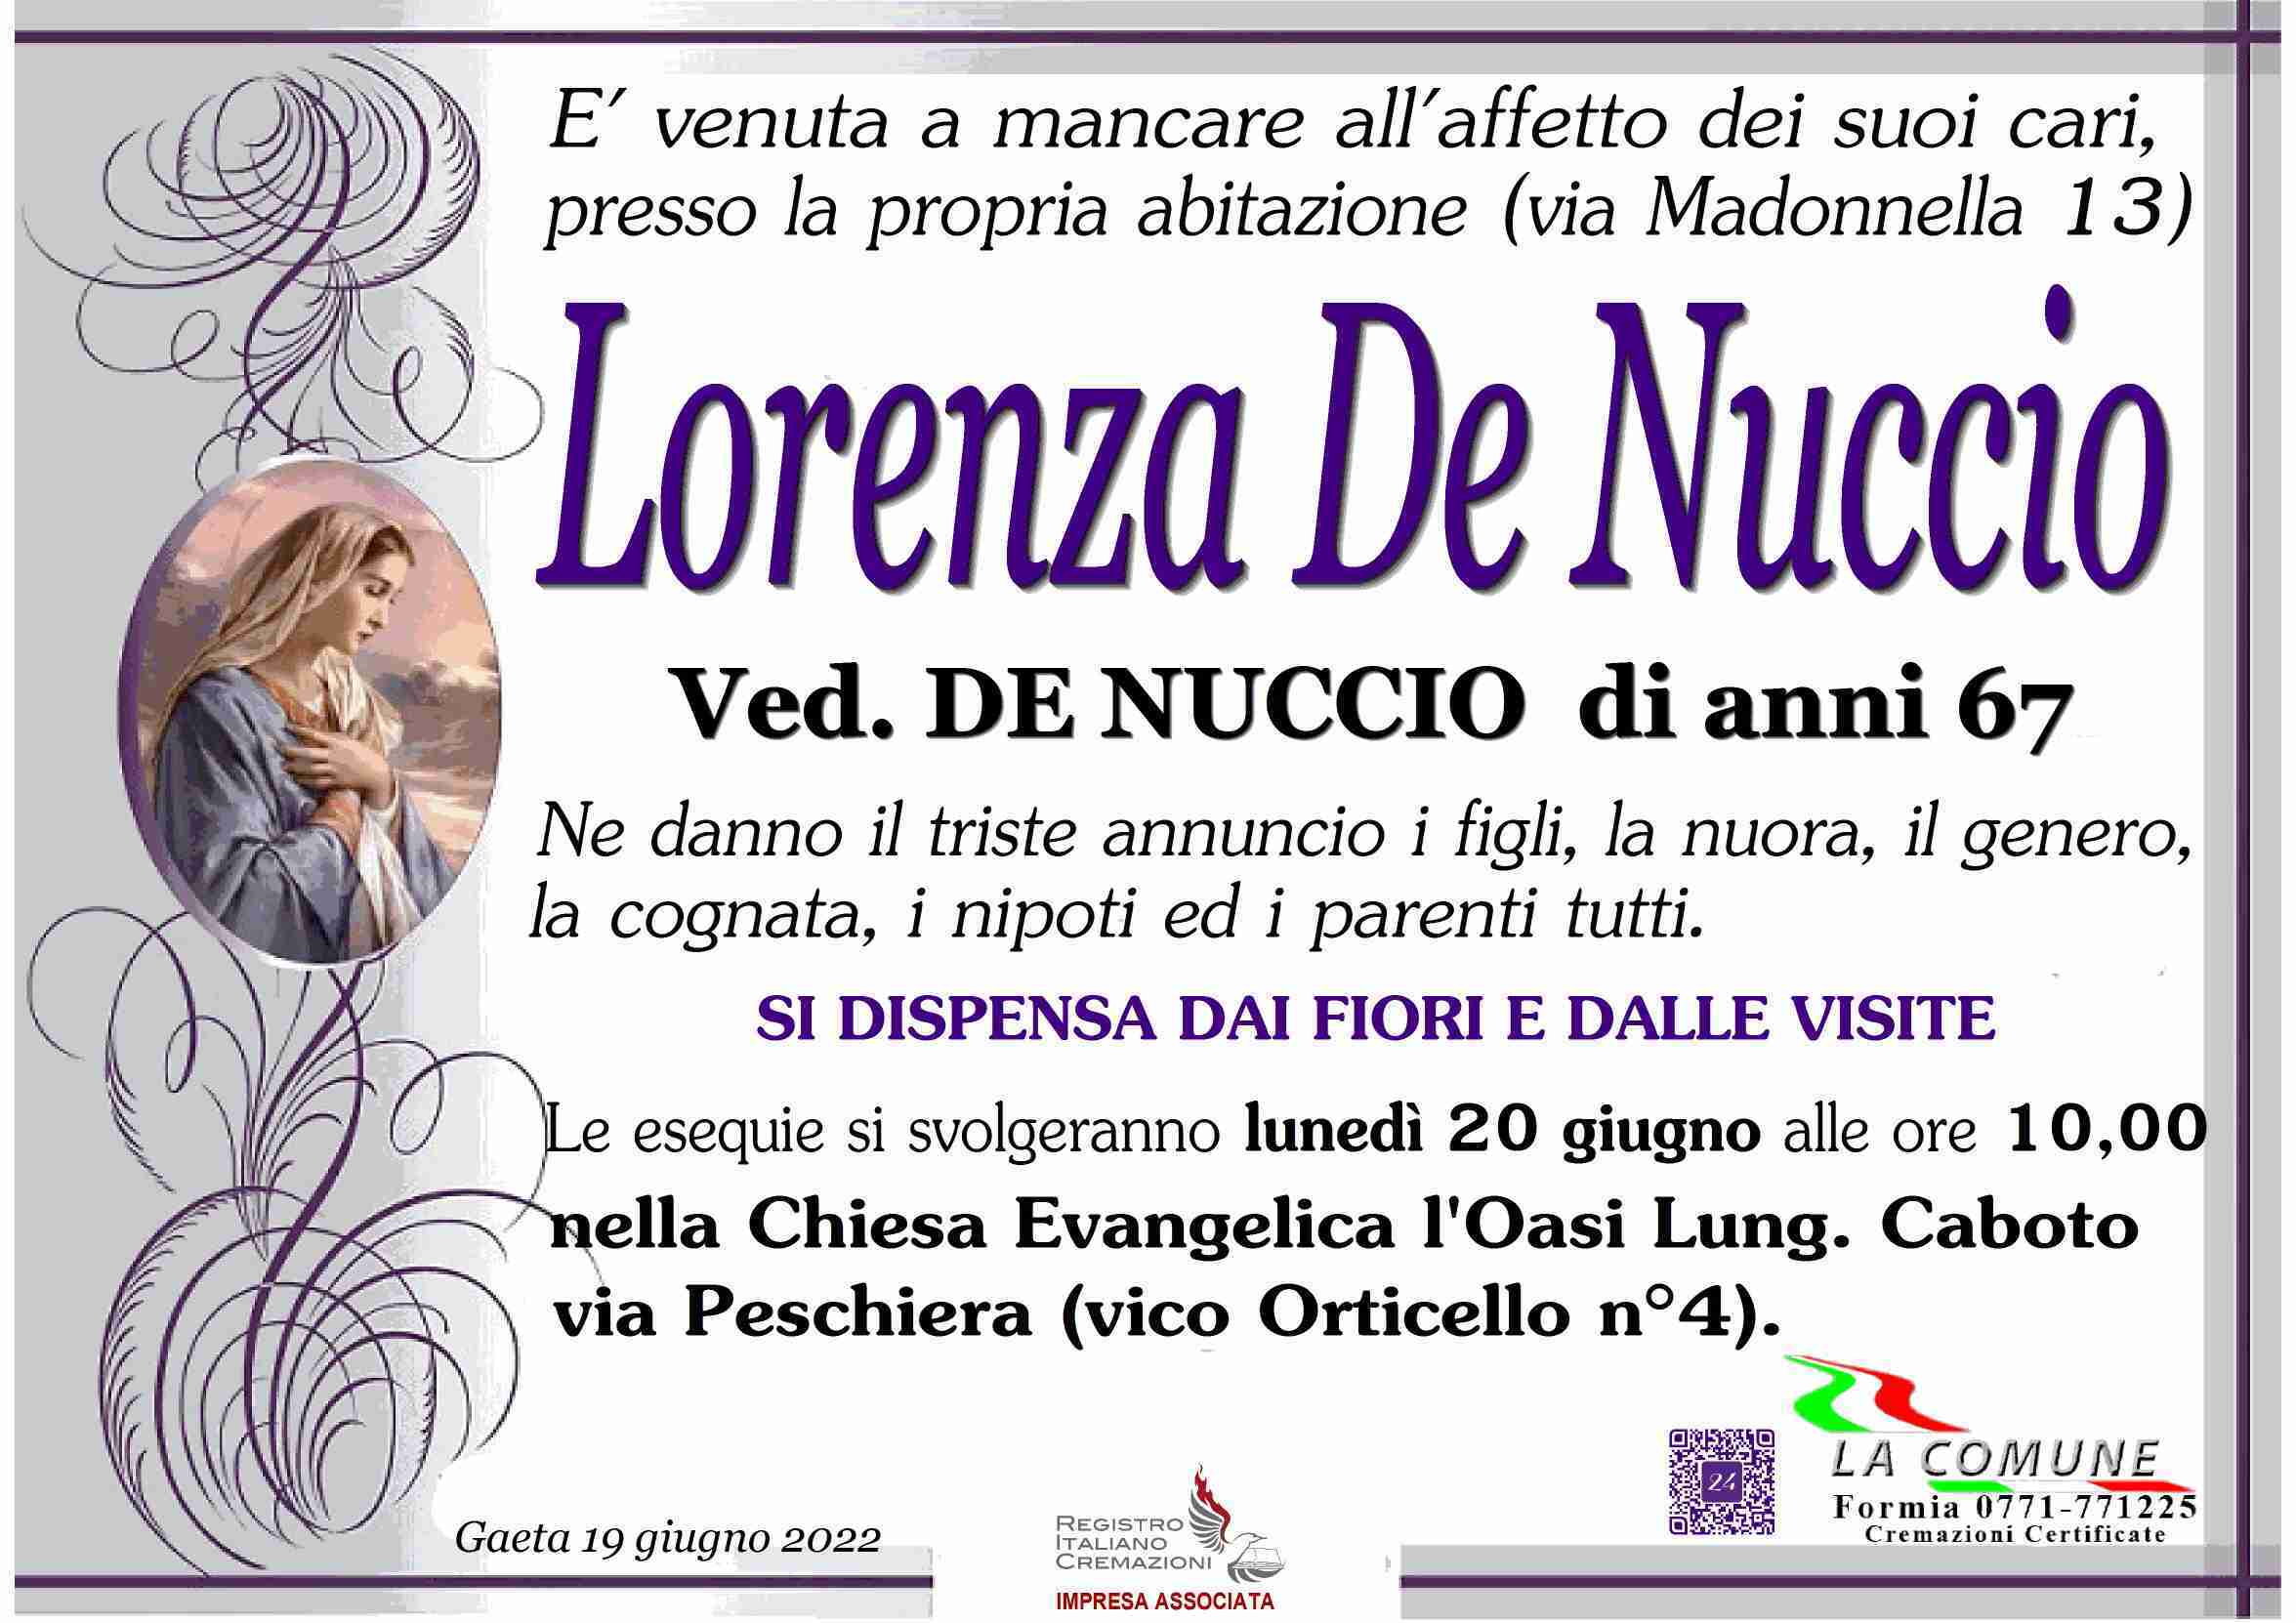 Lorenza De Nuccio